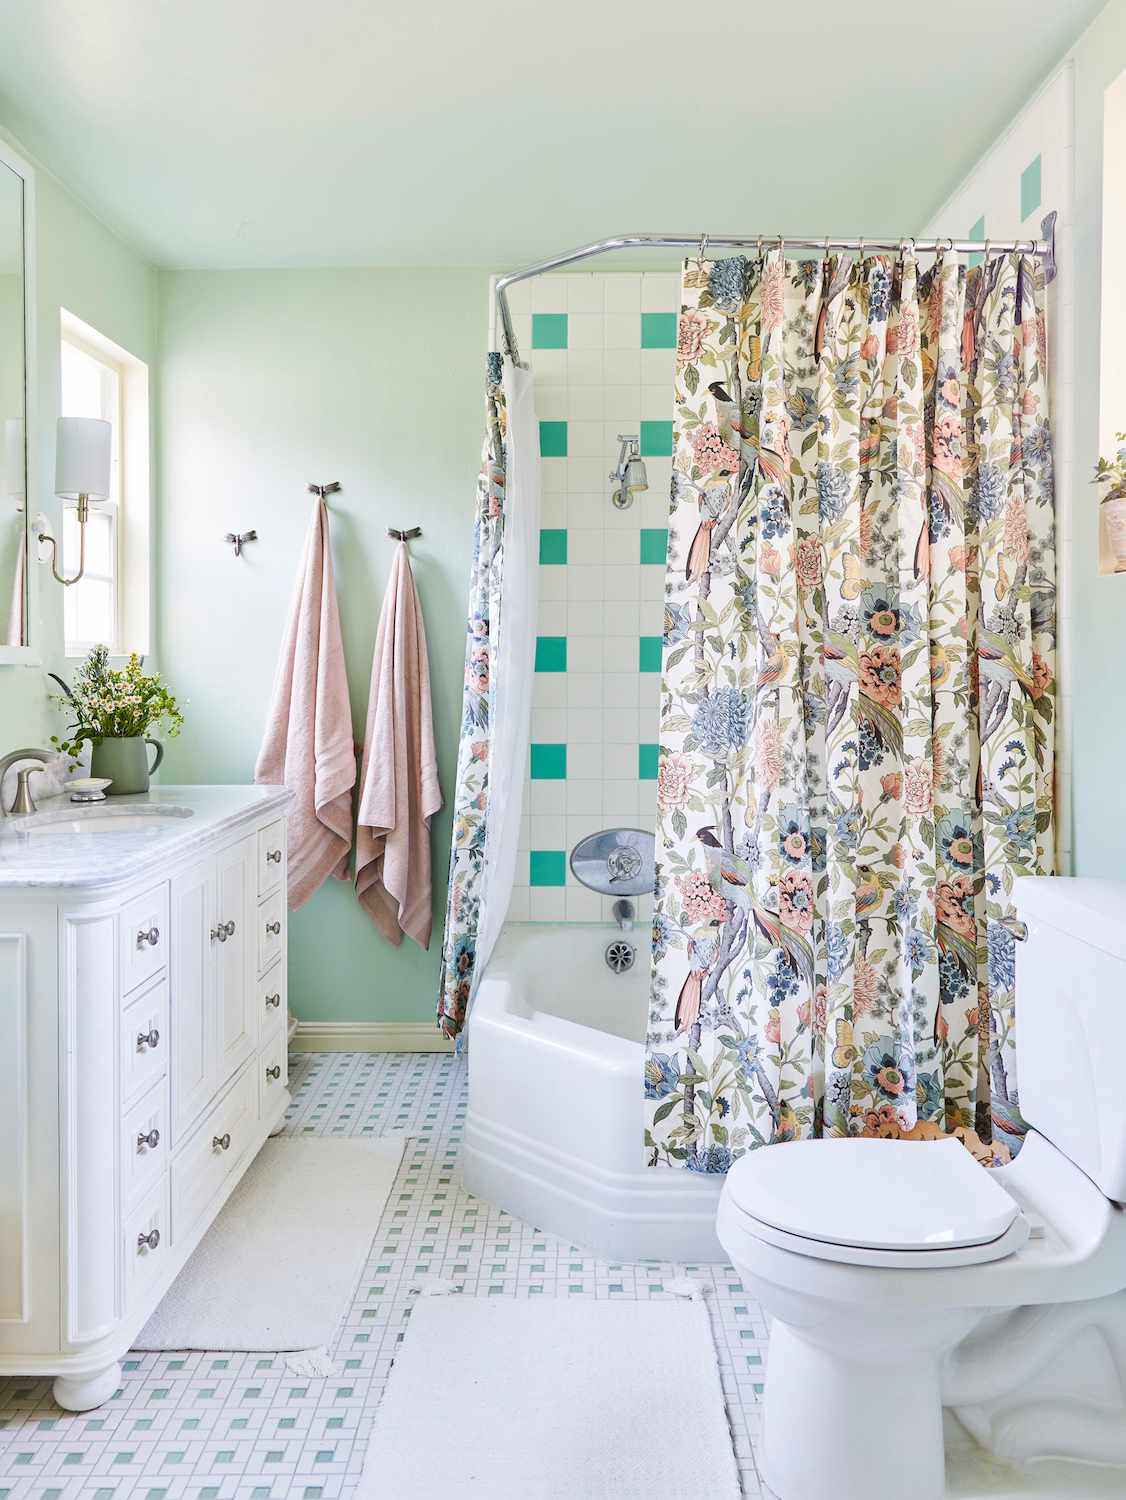 ideias de azulejos para banheira verde e branca